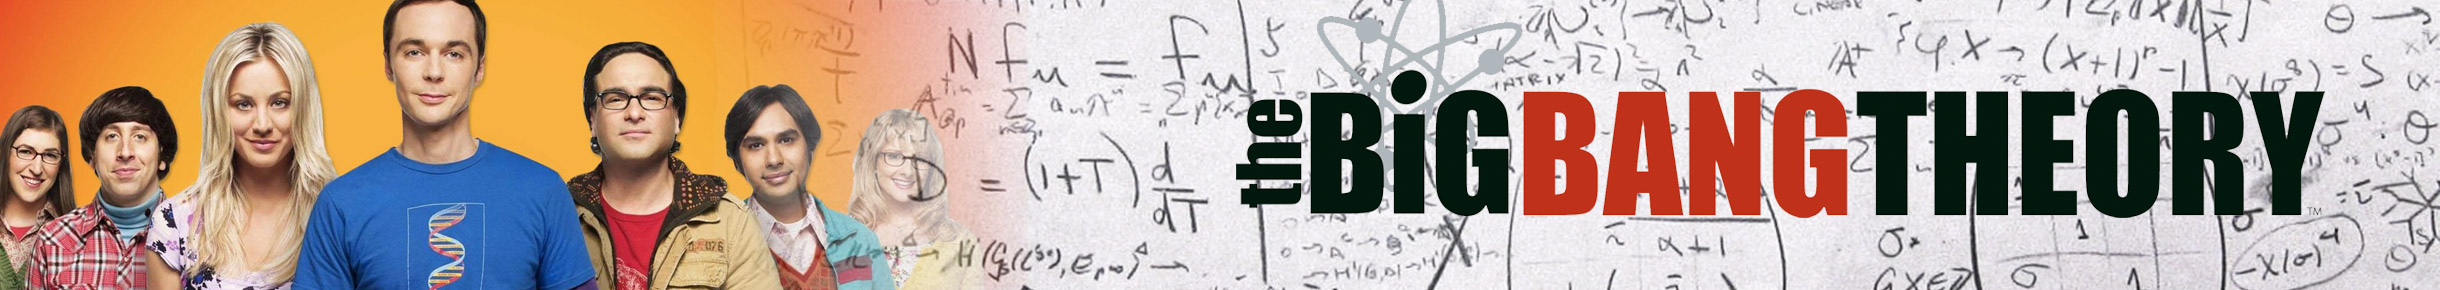 Big Bang Theory Plush Figures Banner